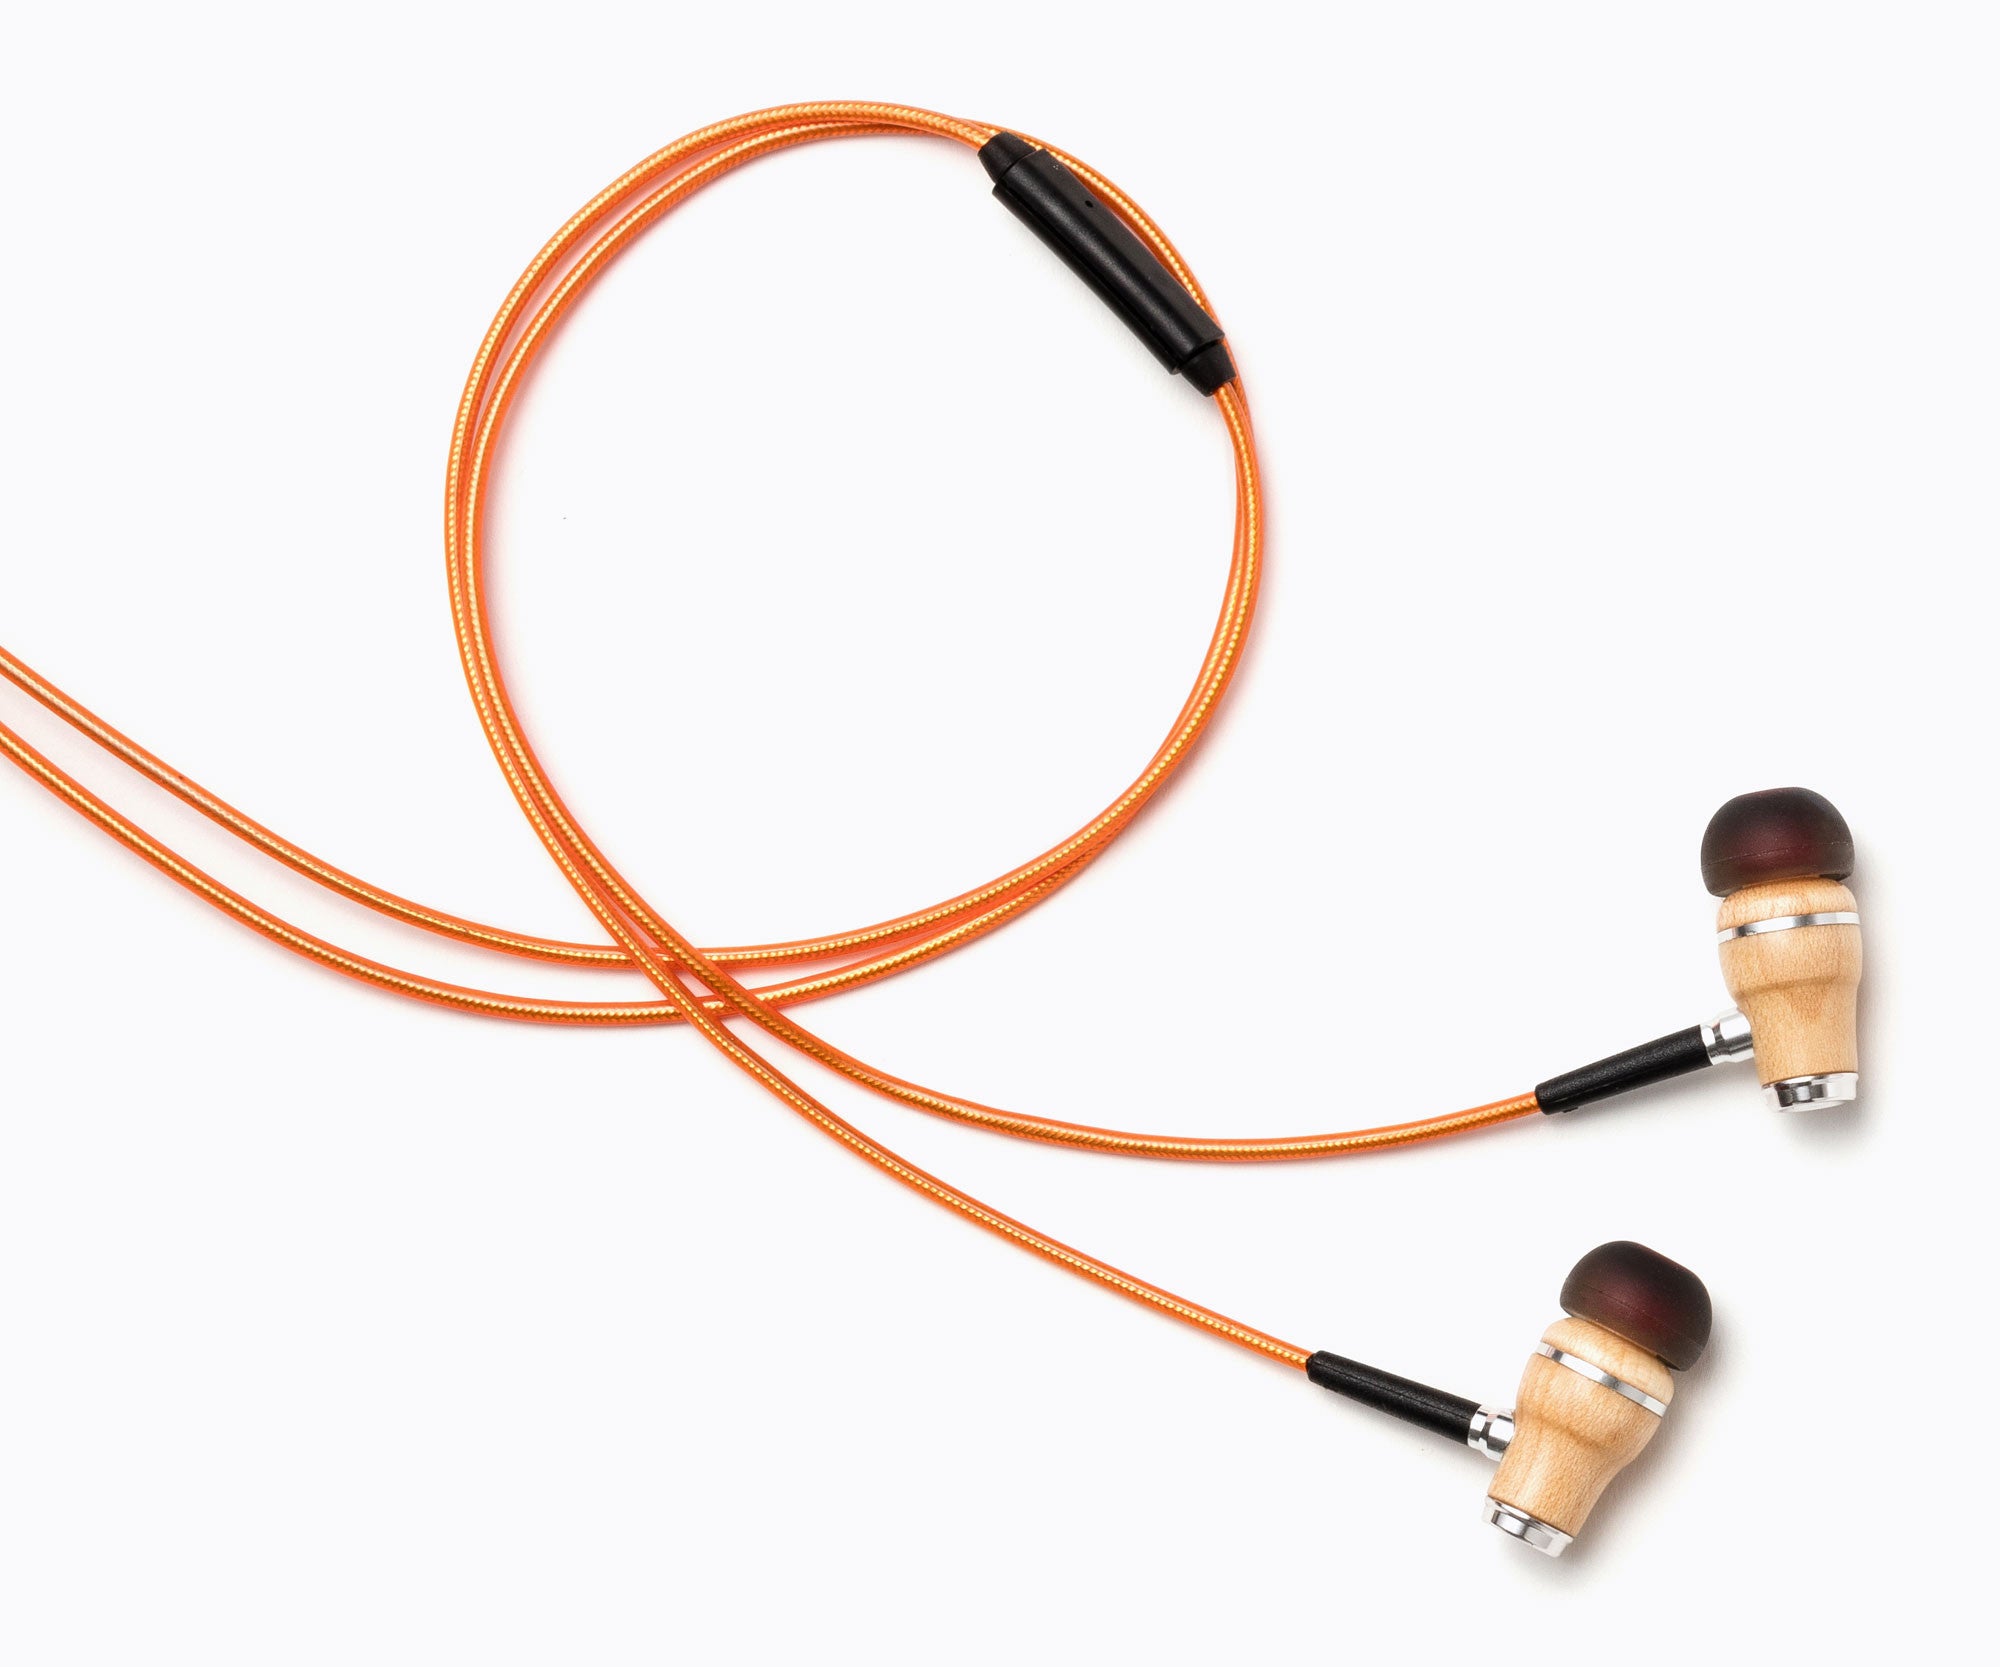 NRG 2.0 In-Ear Wood Headphones - Metallic Orange